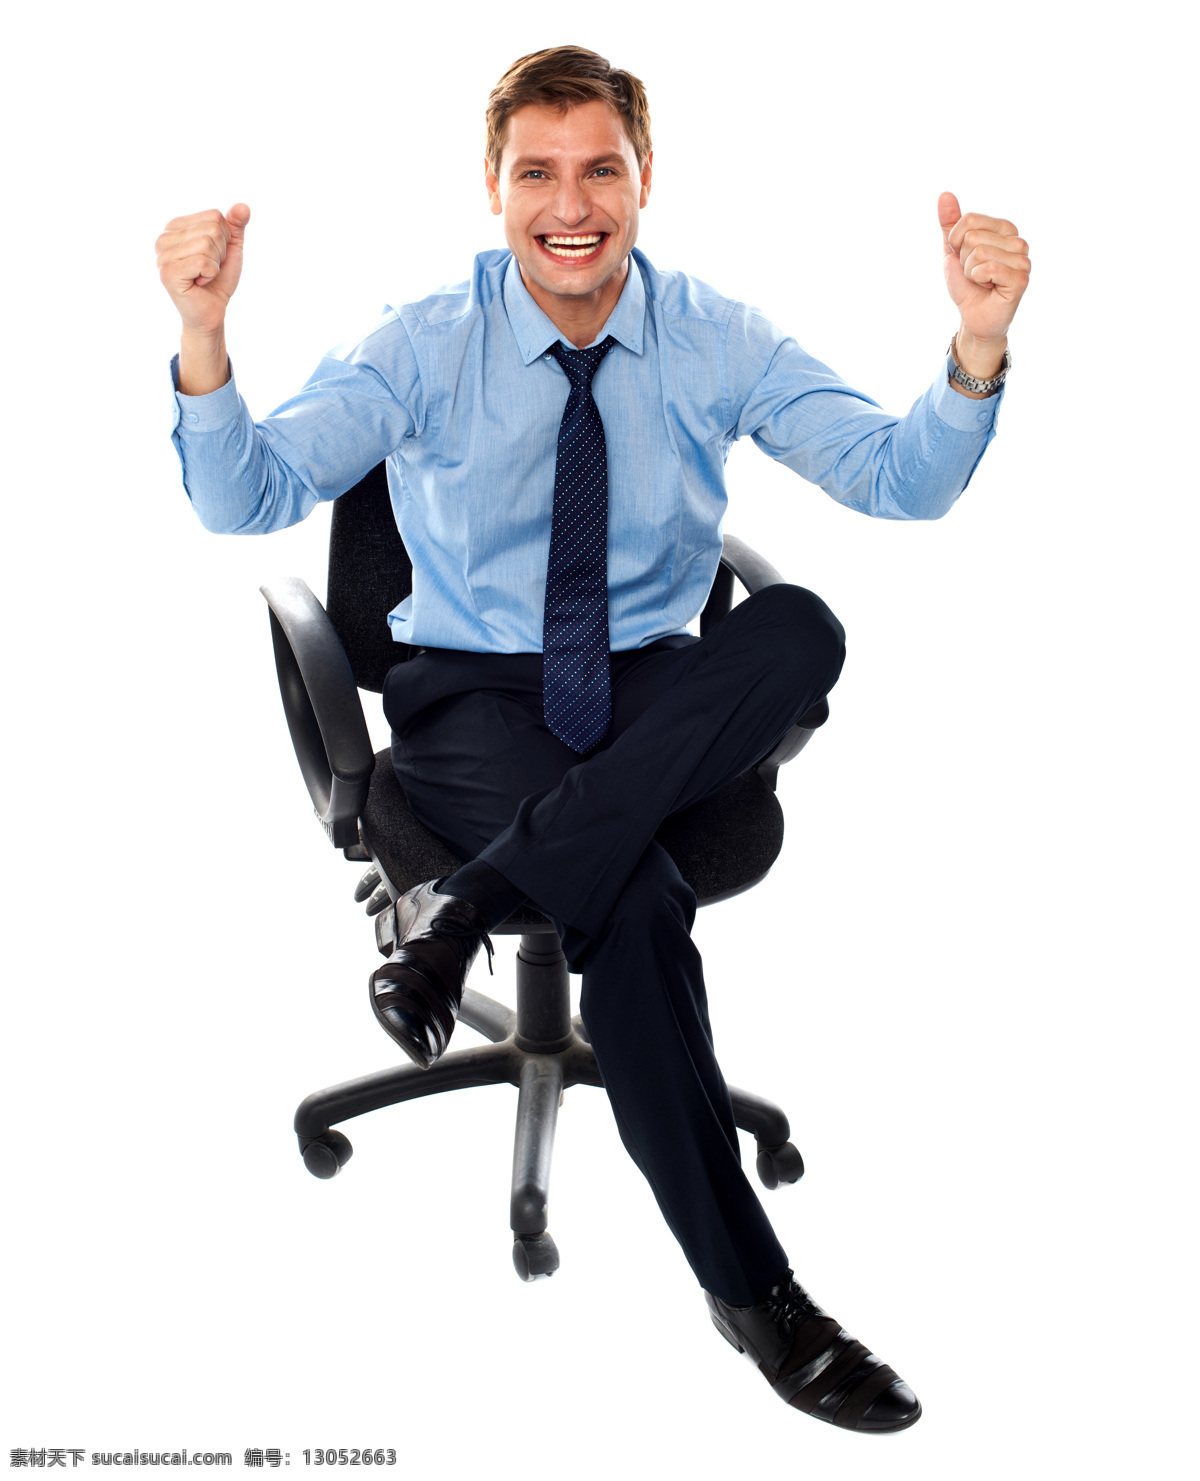 转椅 上 兴奋 商务 男人 微笑 西装领带 职业装 动作 姿势 职业 白领 商务男人 外国男人 帅哥 商务人士 人物图片